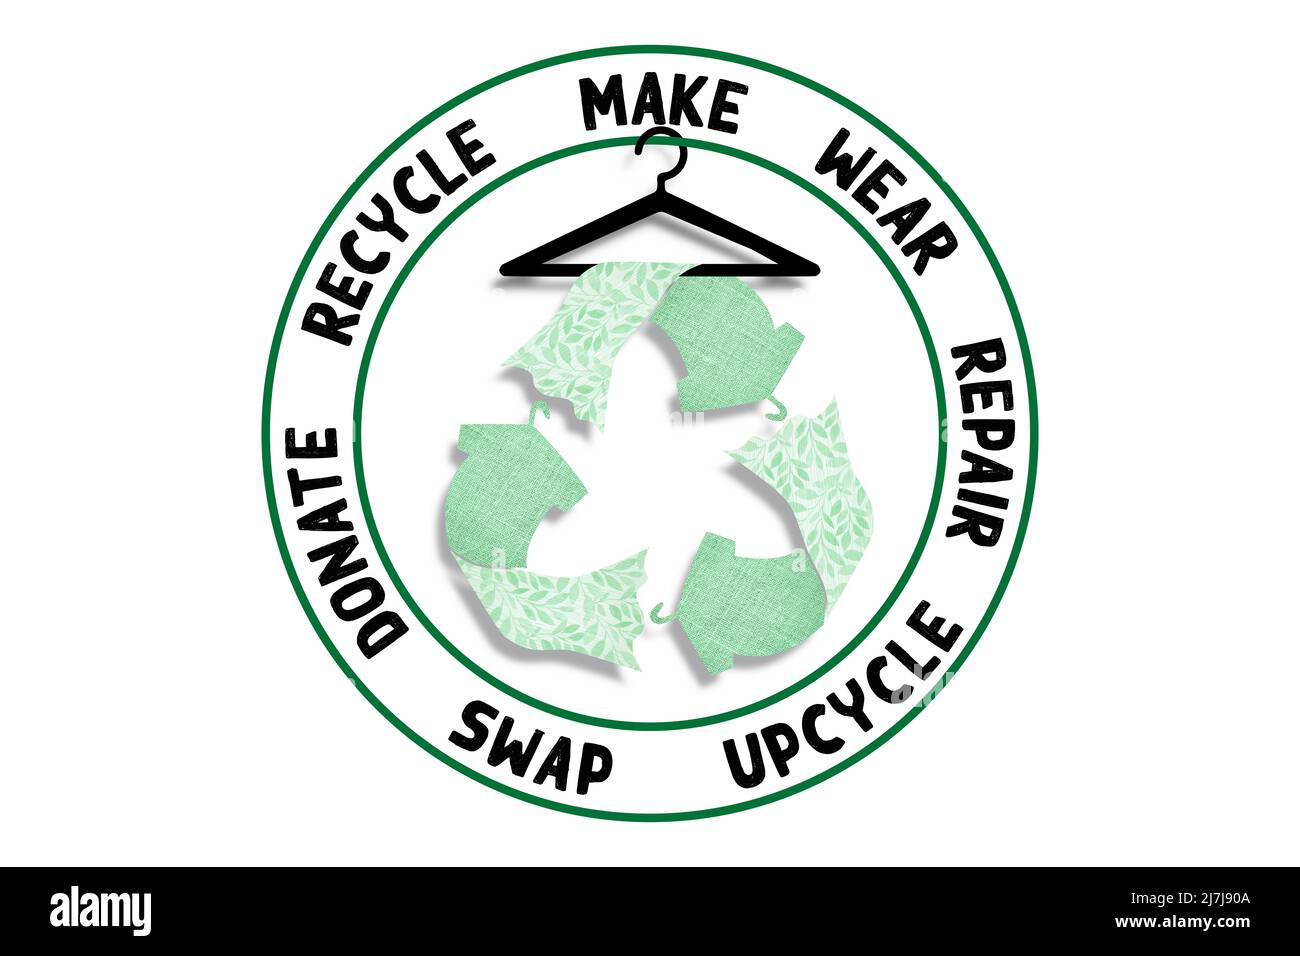 Kreisförmige Mode, machen, tragen, reparieren, upcycle, Tauschen, spenden, recyceln mit Kleidung recyceln Icon nachhaltiges Modekonzept Stockfoto